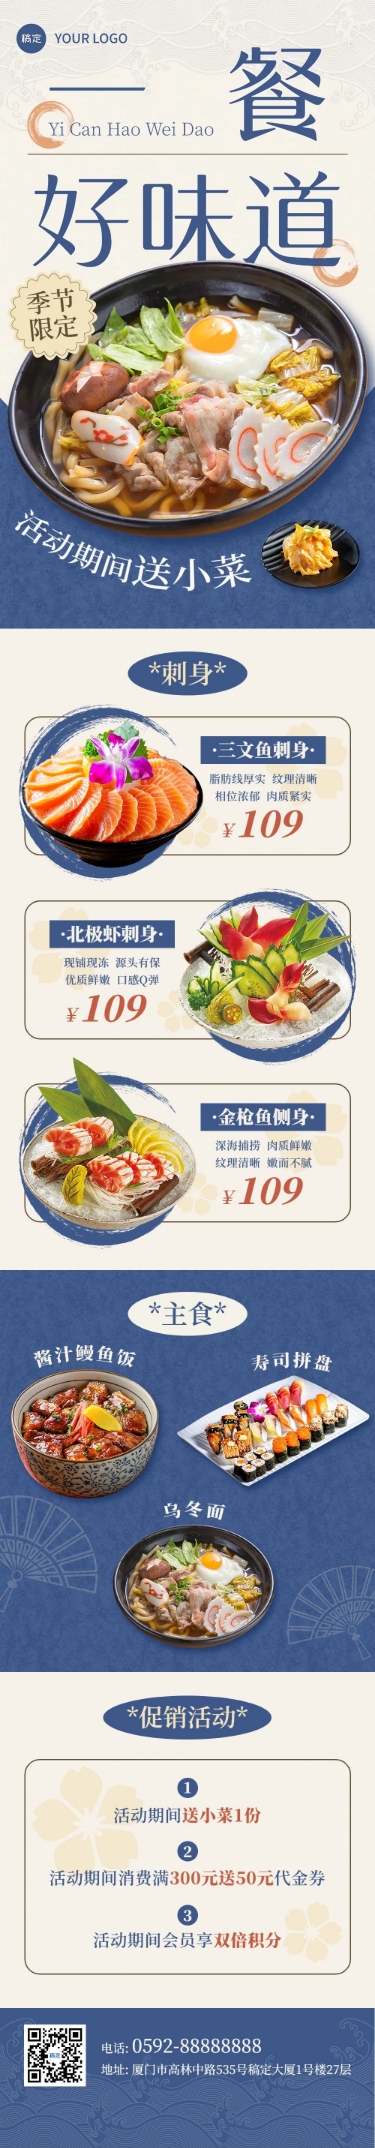 餐饮韩国料理促销活动文章长图预览效果